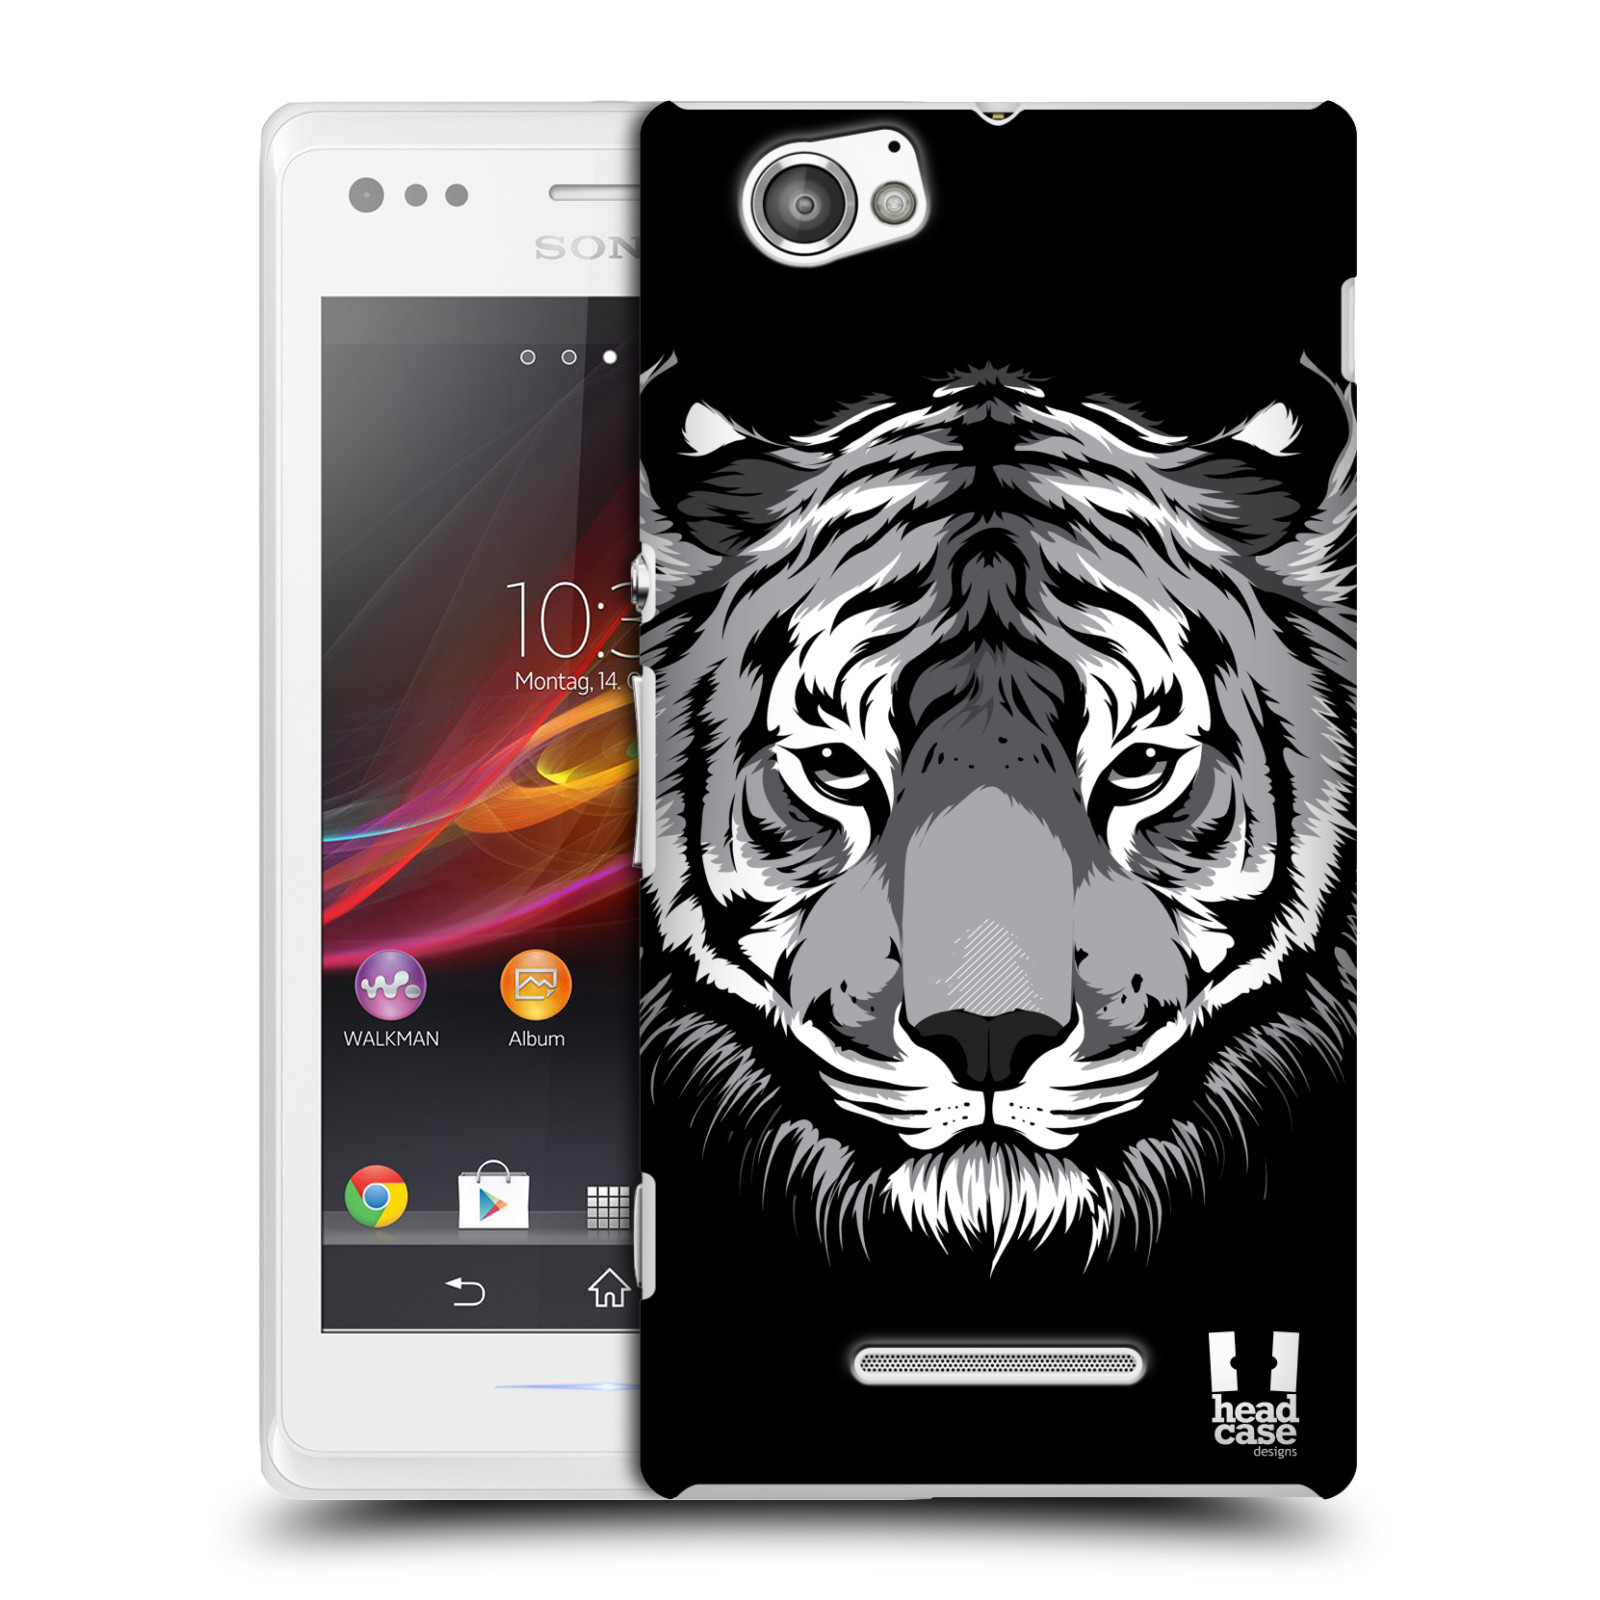 HEAD CASE plastový obal na mobil Sony Xperia M vzor Zvíře kreslená tvář 2 tygr